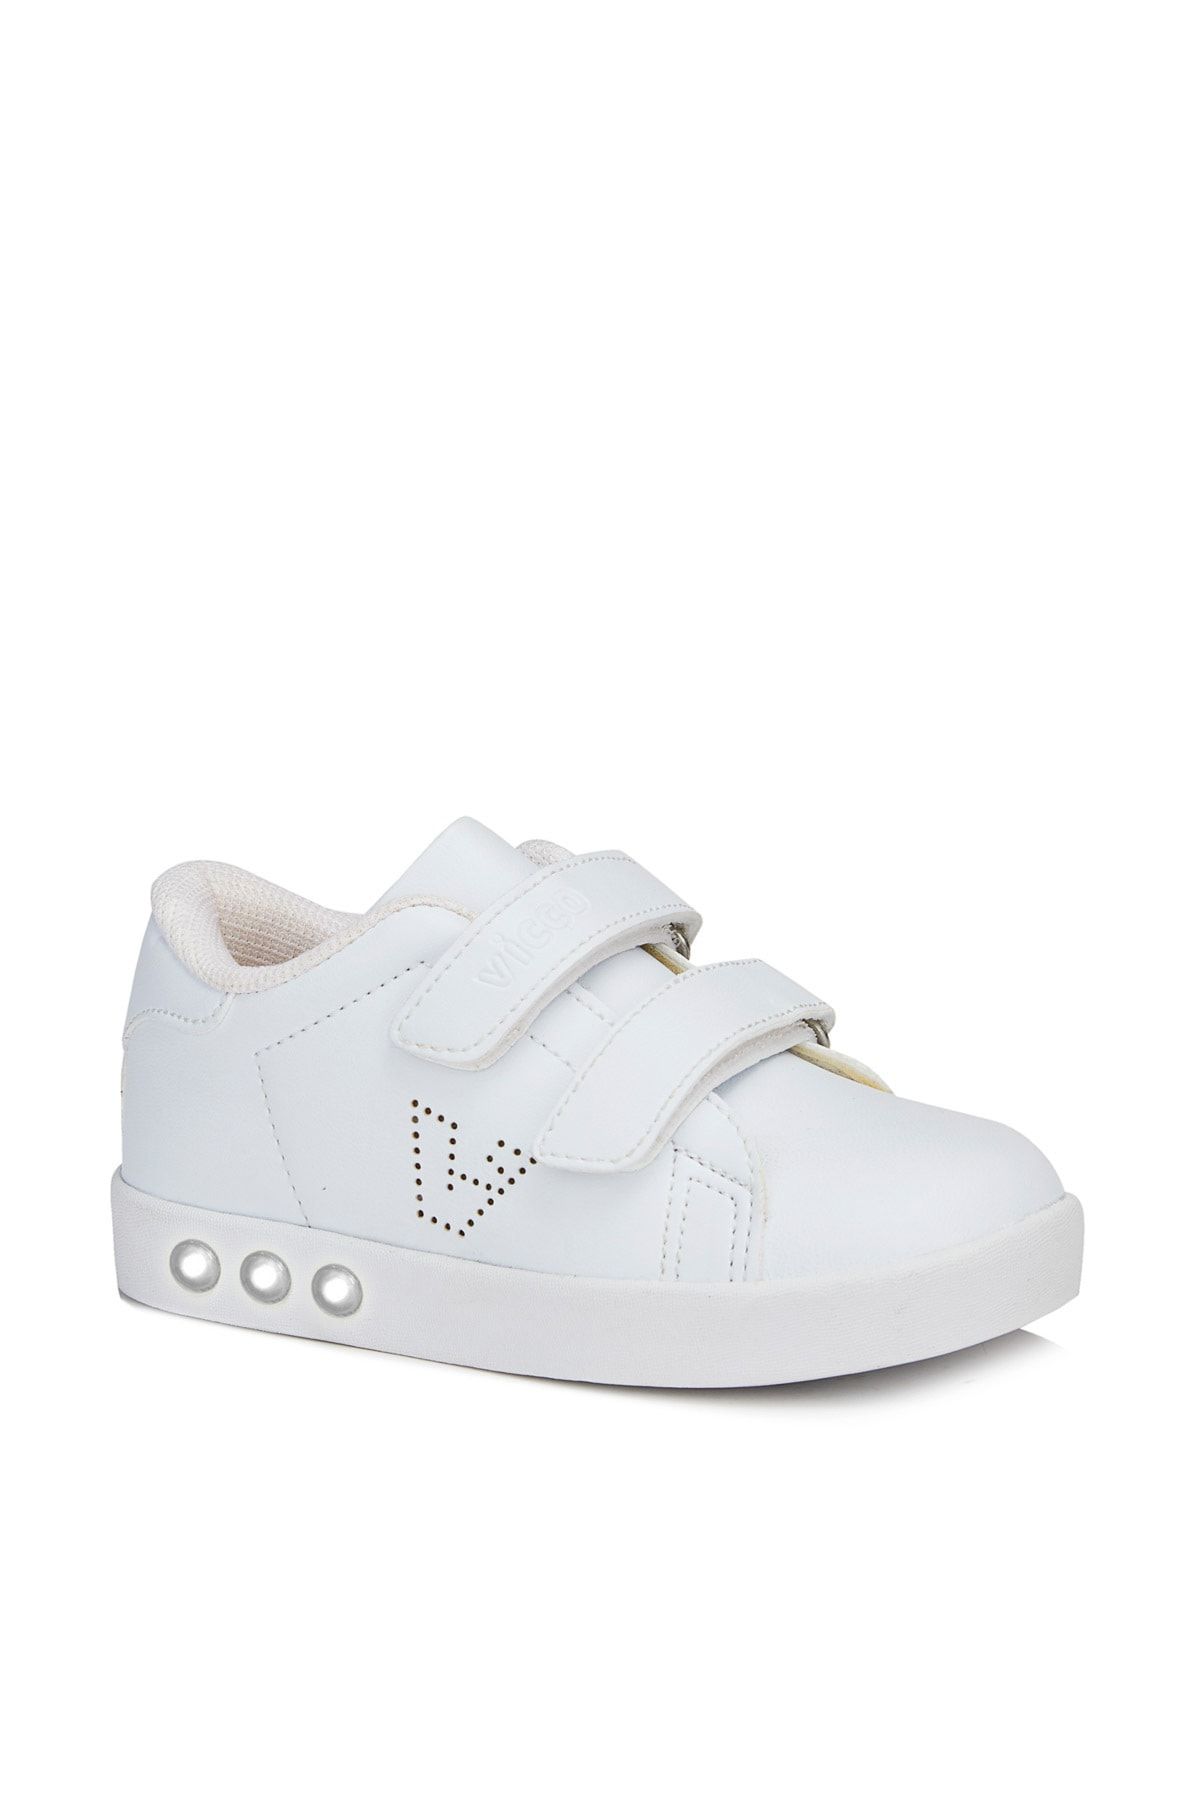 Vicco Oyo Işıklı Unisex Ilk Adım Beyaz Sneaker